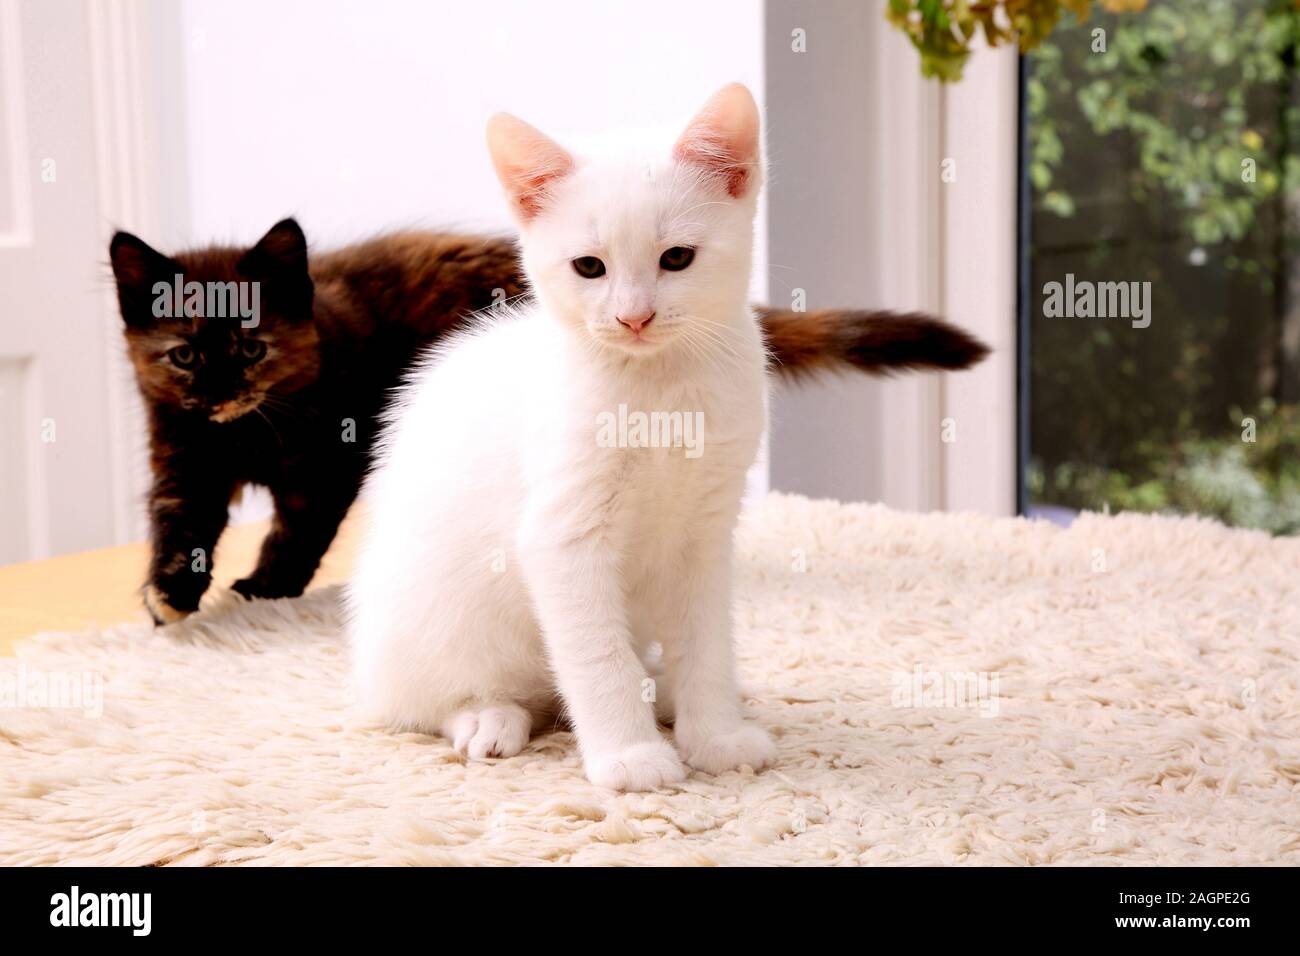 10 Week Old Kitten Turkish Angora Cross- White Male and Tortoiseshell Female Stock Photo